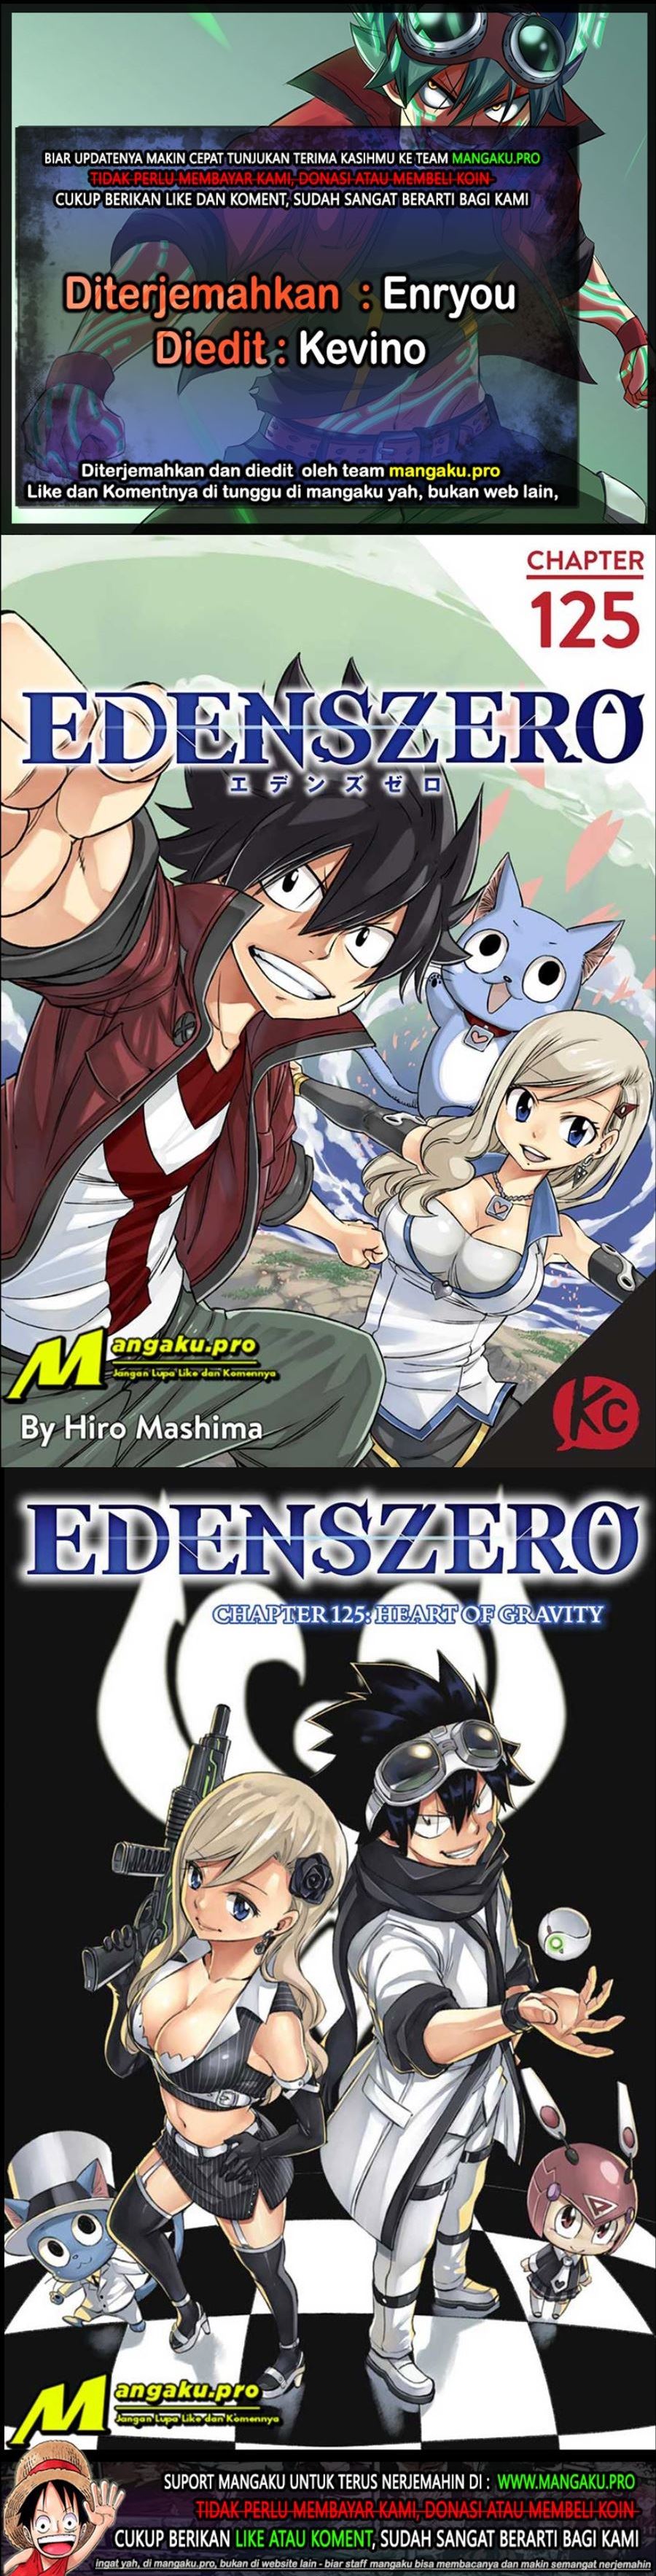 Eden's Zero Chapter 125 1